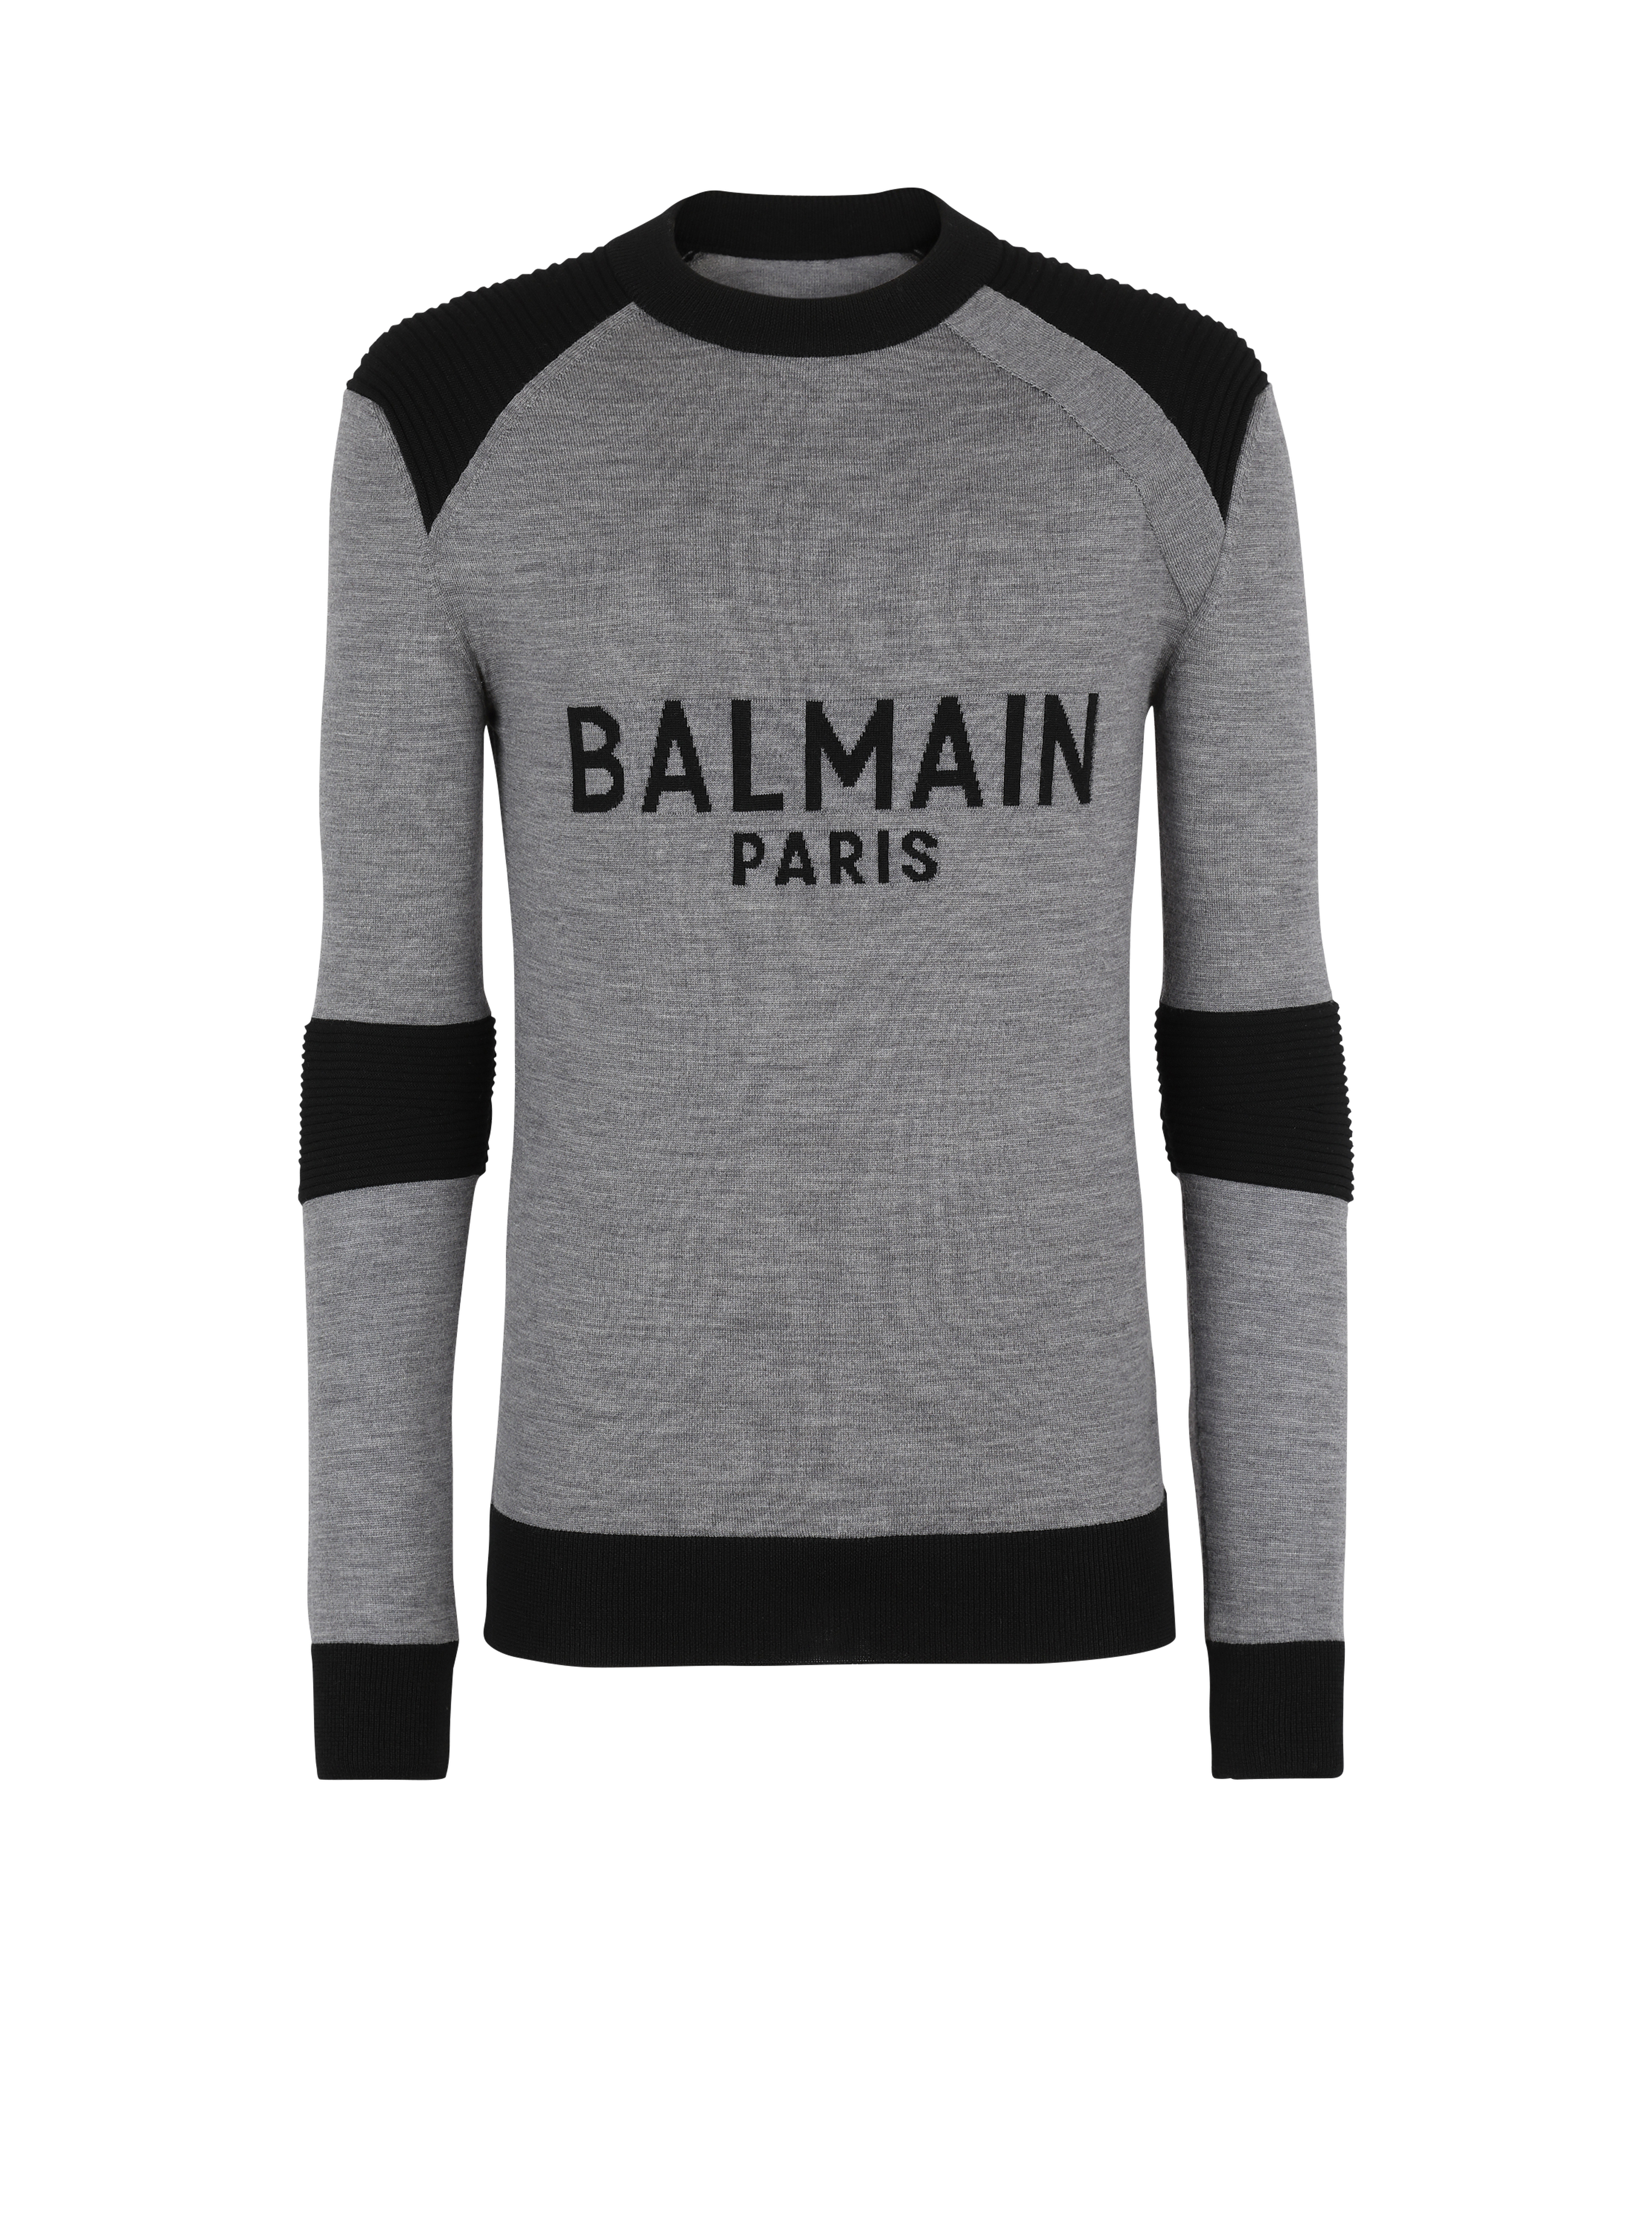 Balmain Men's New Arrivals | BALMAIN